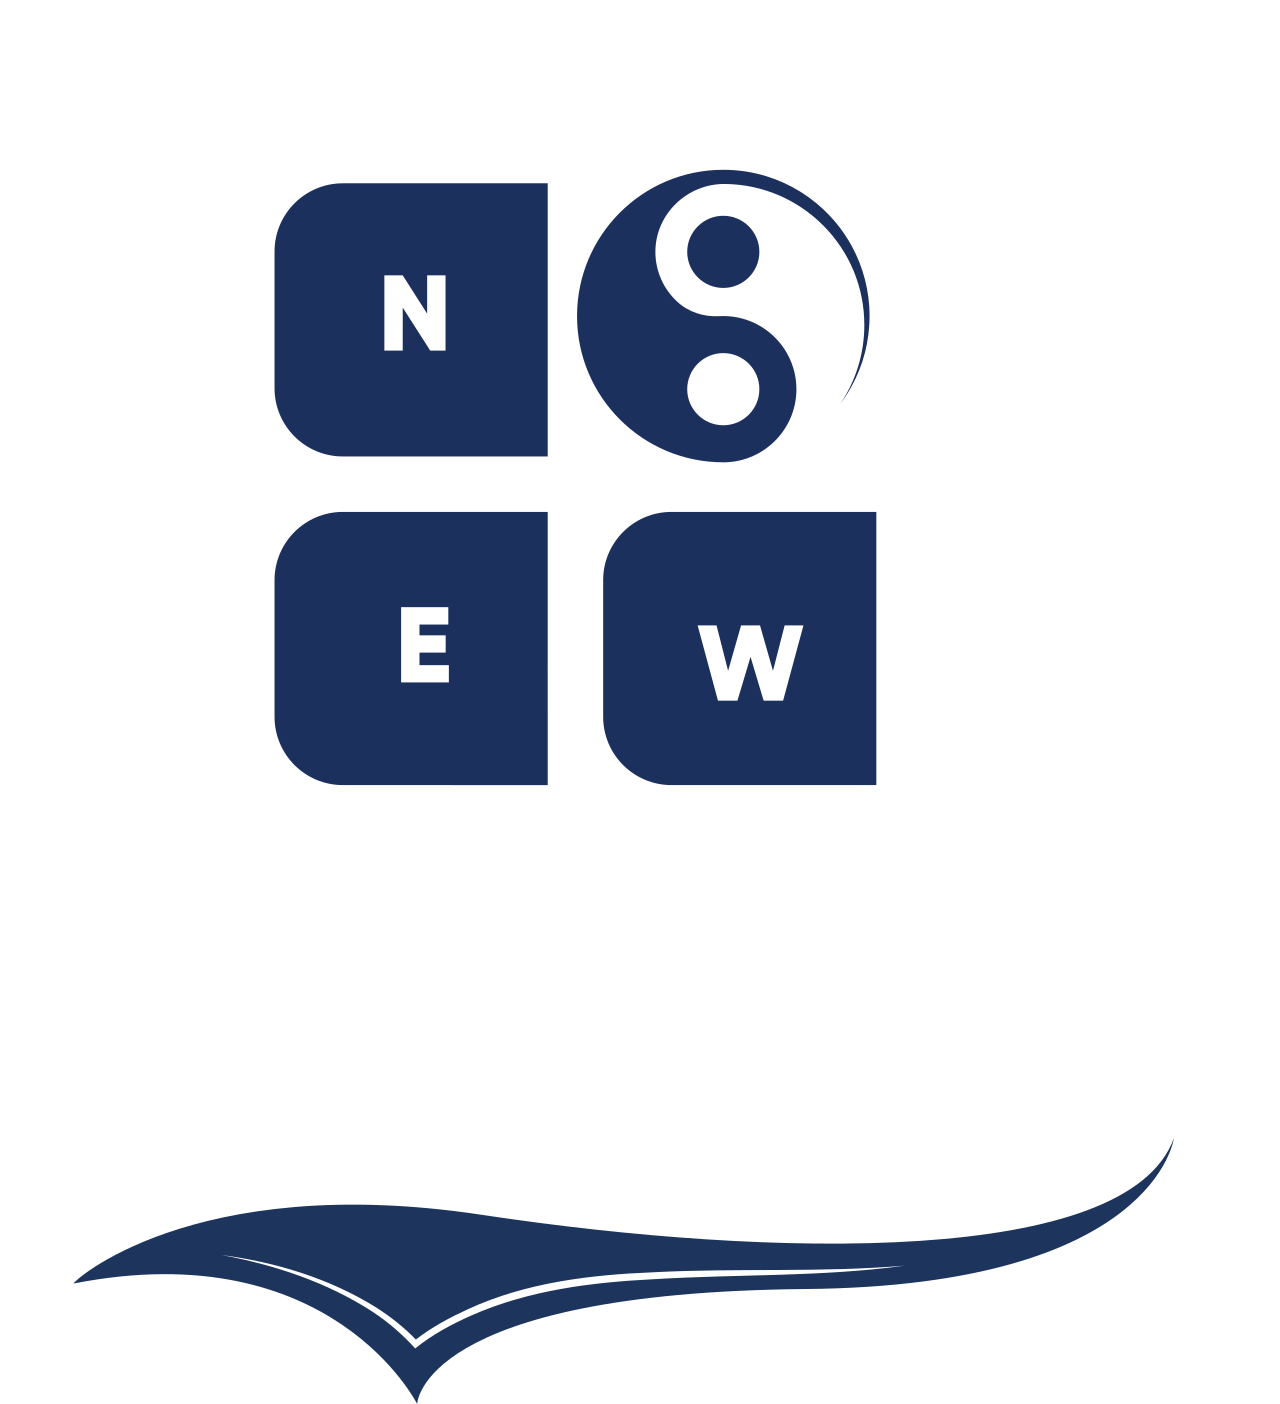 UTOPIA's web page